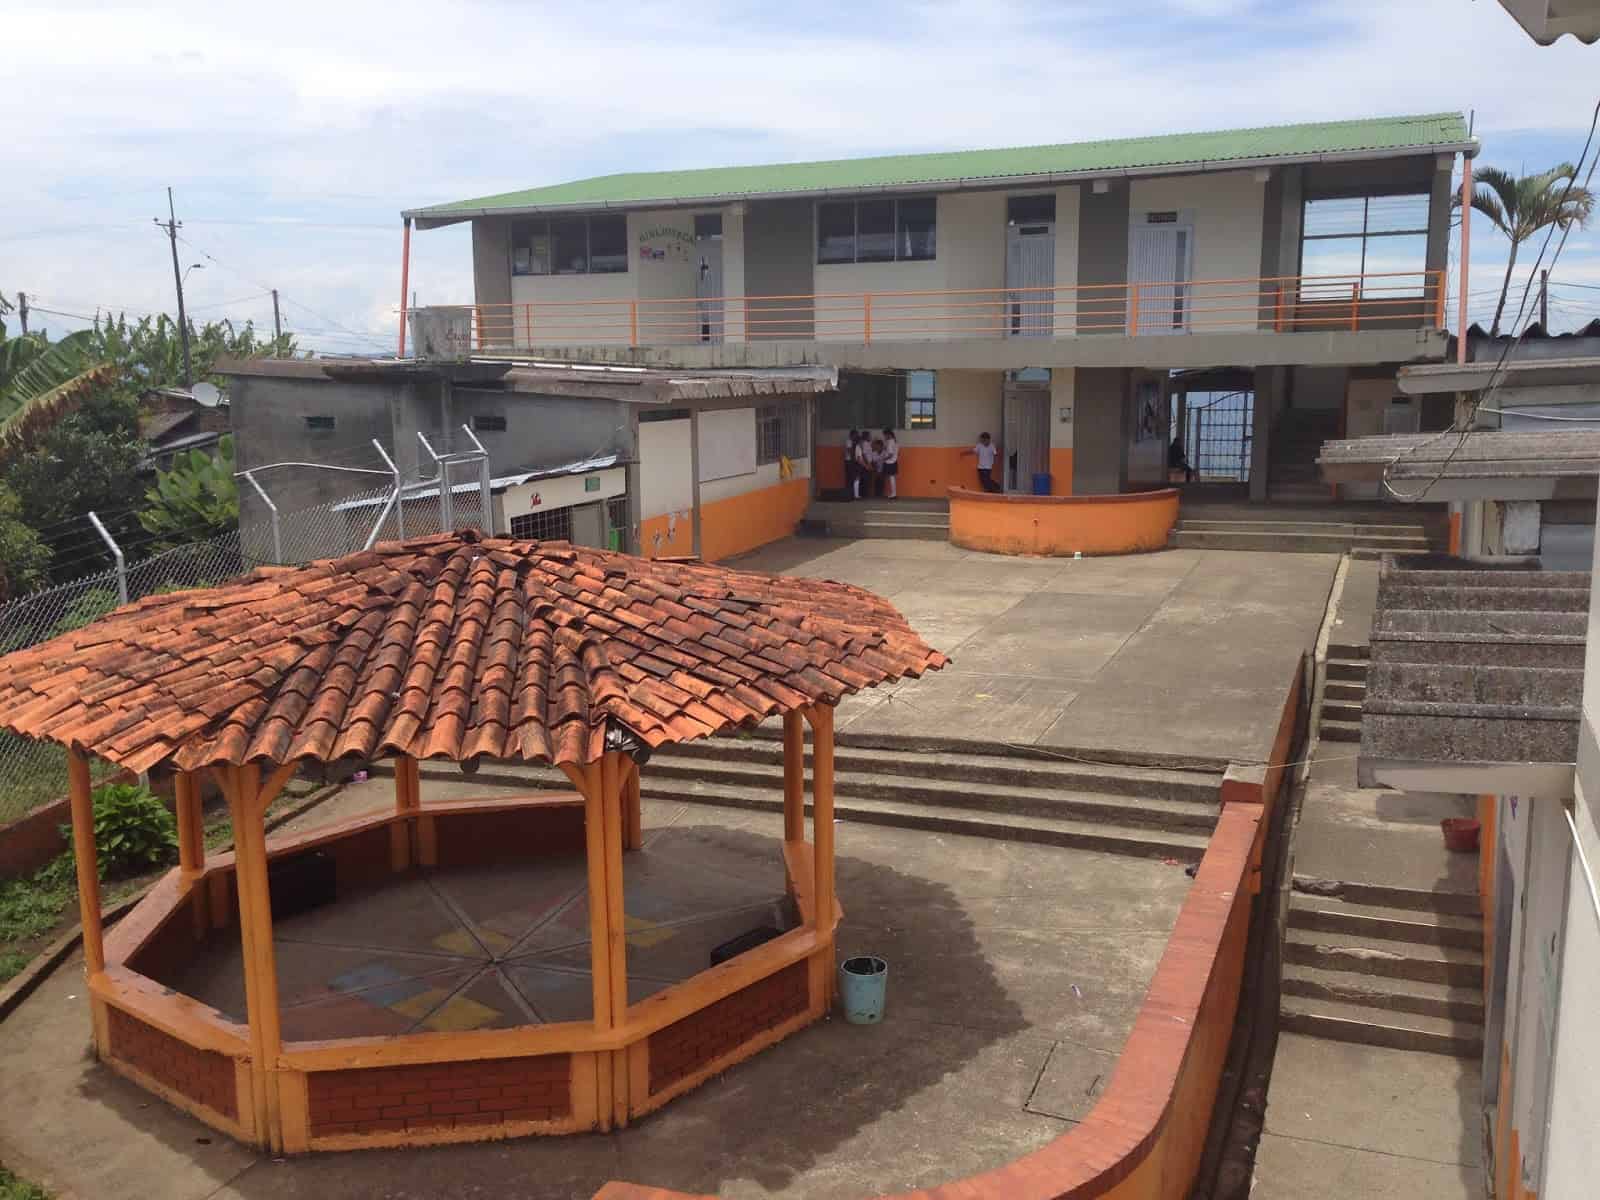 The school in Taparcal, Belén de Umbría, Risaralda, Colombia